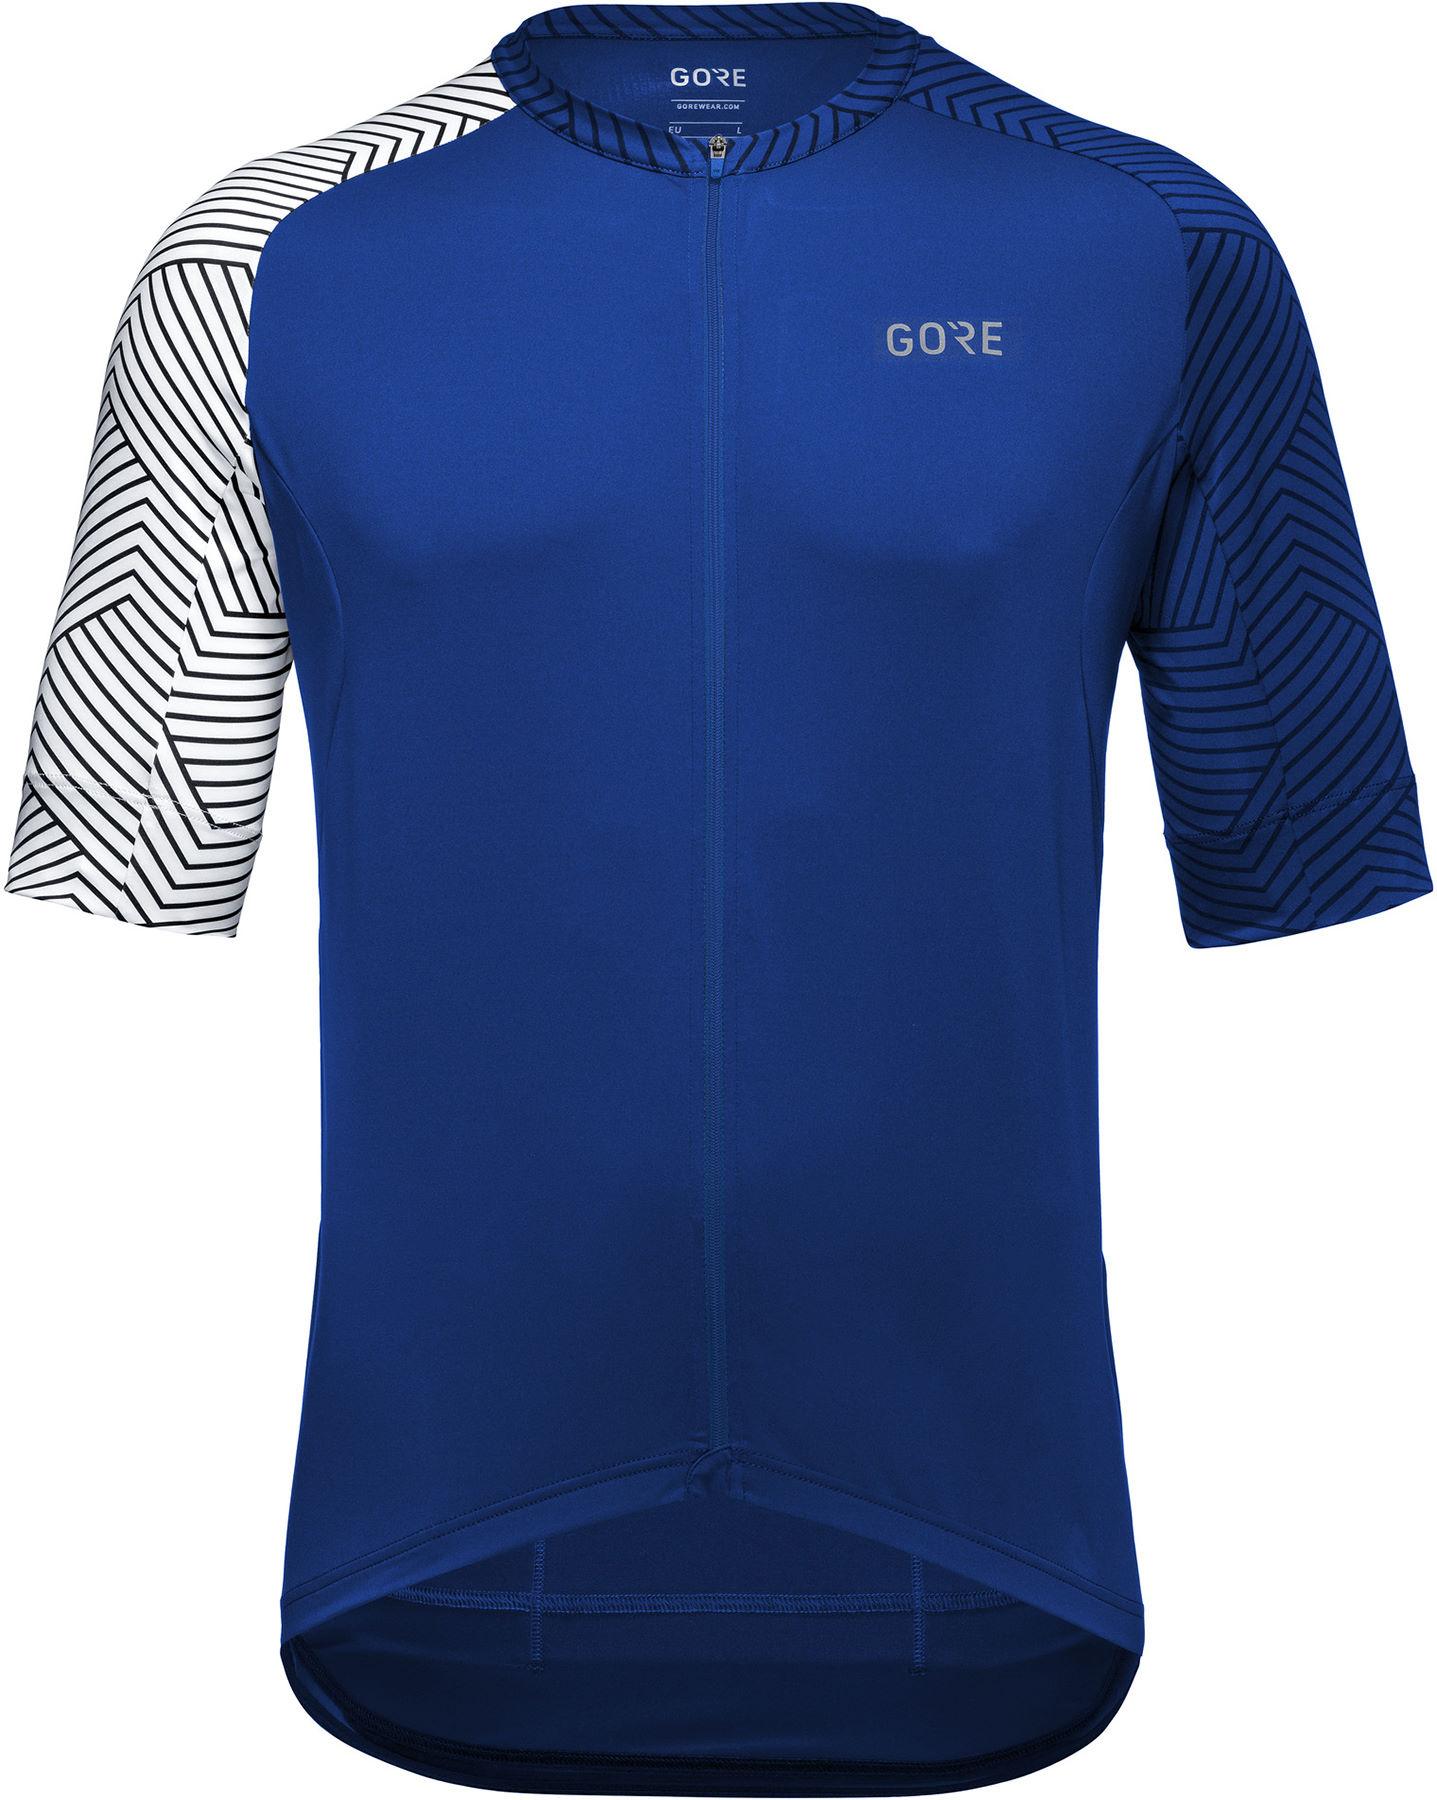 Gorewear C5 Jersey - Ultramarine Blue/white